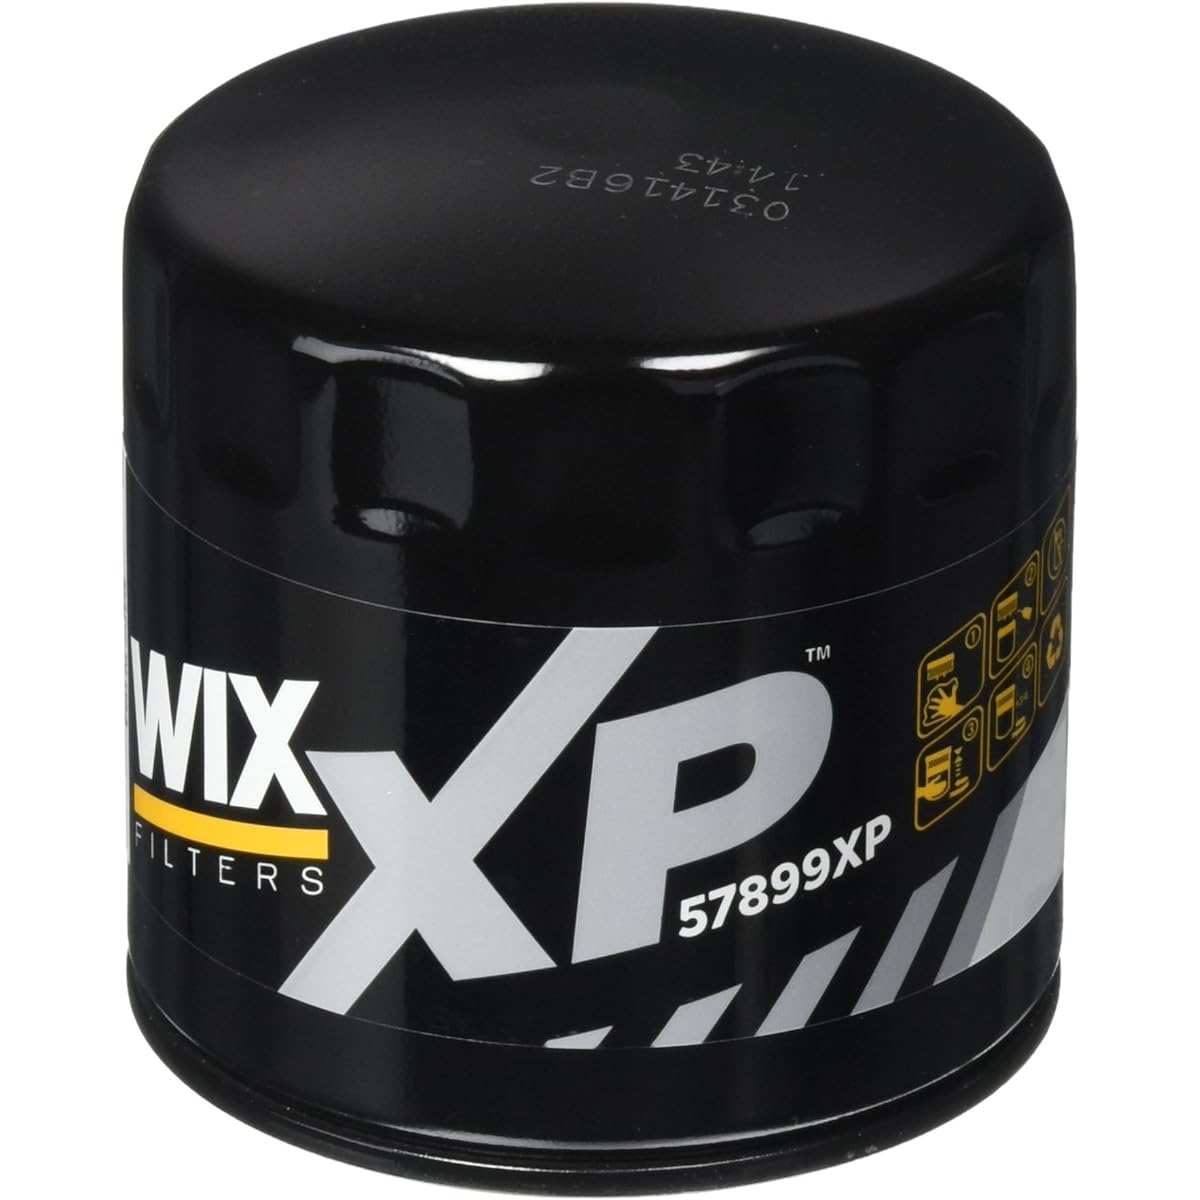 WIX XP 57899xp WIX XP Spin-On Lubricant Lubricant Wix XP Filtro Roscado de Ace Wix Wix XP Tourner-Surtre de Lubrebrifiant